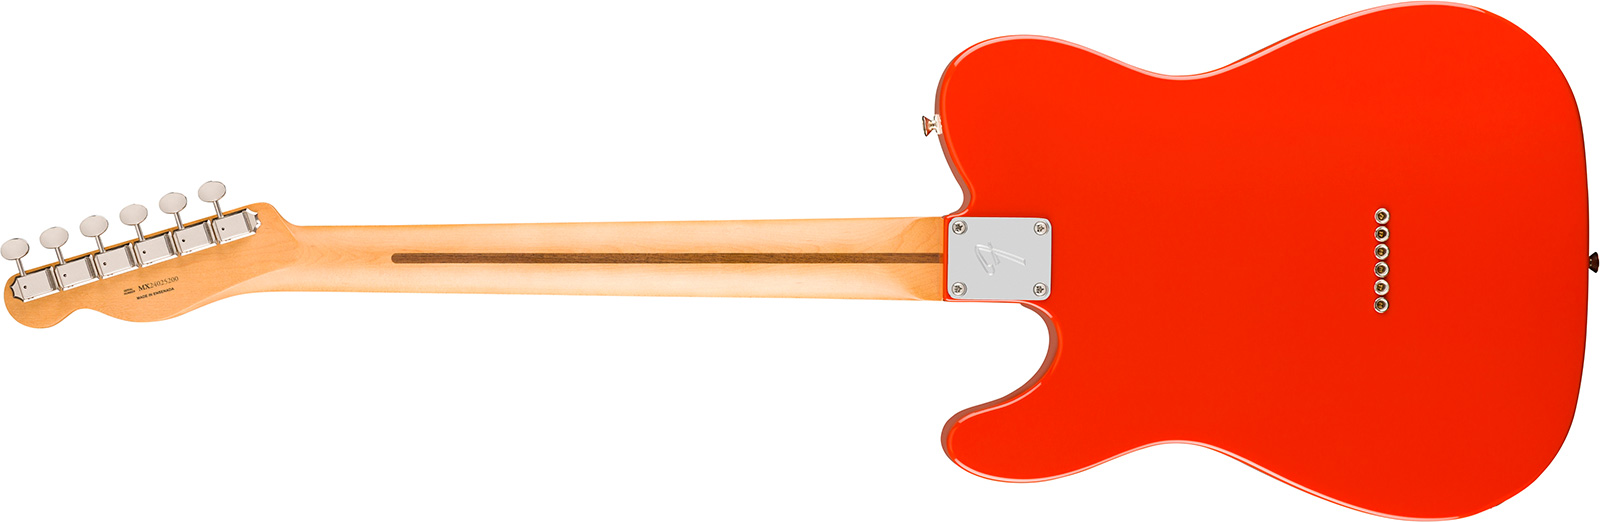 Fender Tele Player Ii Mex Aulne 2s Ht Mn - Coral Red - Televorm elektrische gitaar - Variation 1